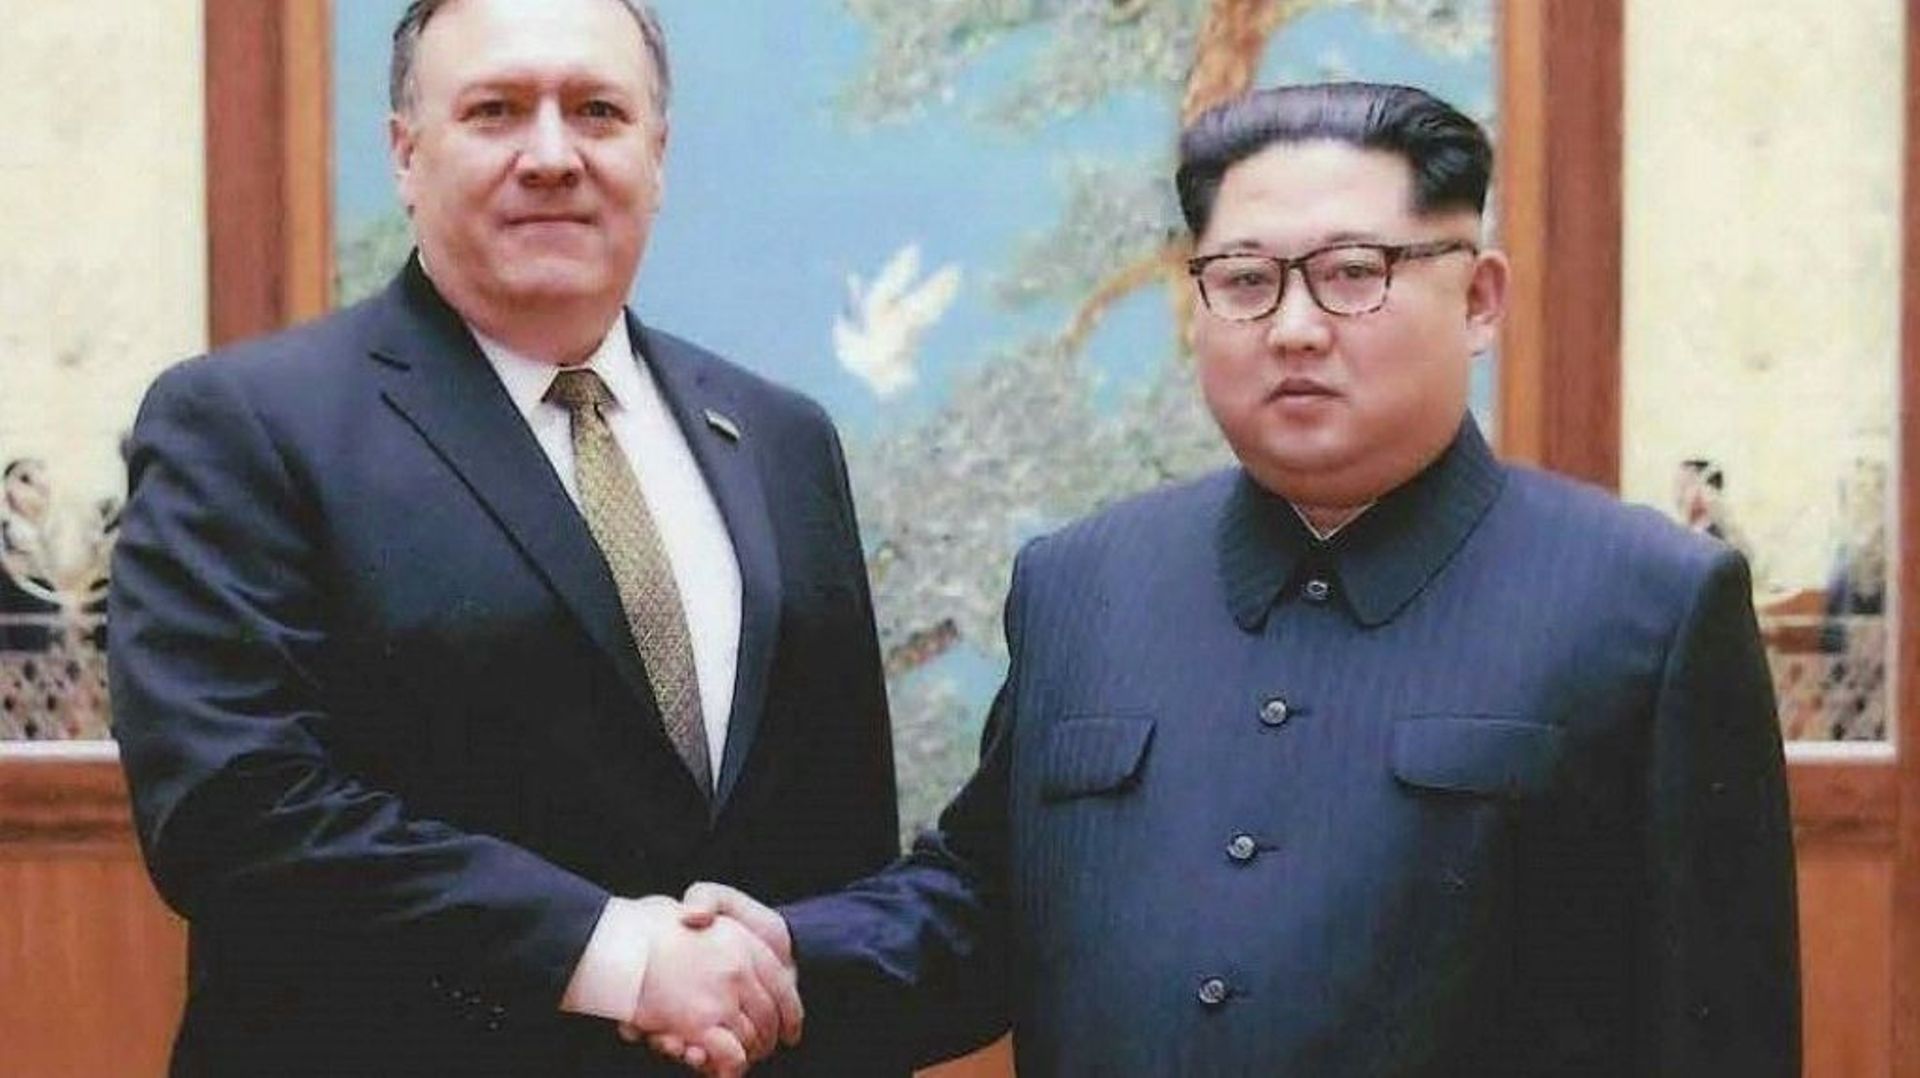 Le chef de la diplomatie américaine Mike Pompeo et le leader Kim Jong Un, le 26 avril 2018 à Pyongyang, en Corée du Nord